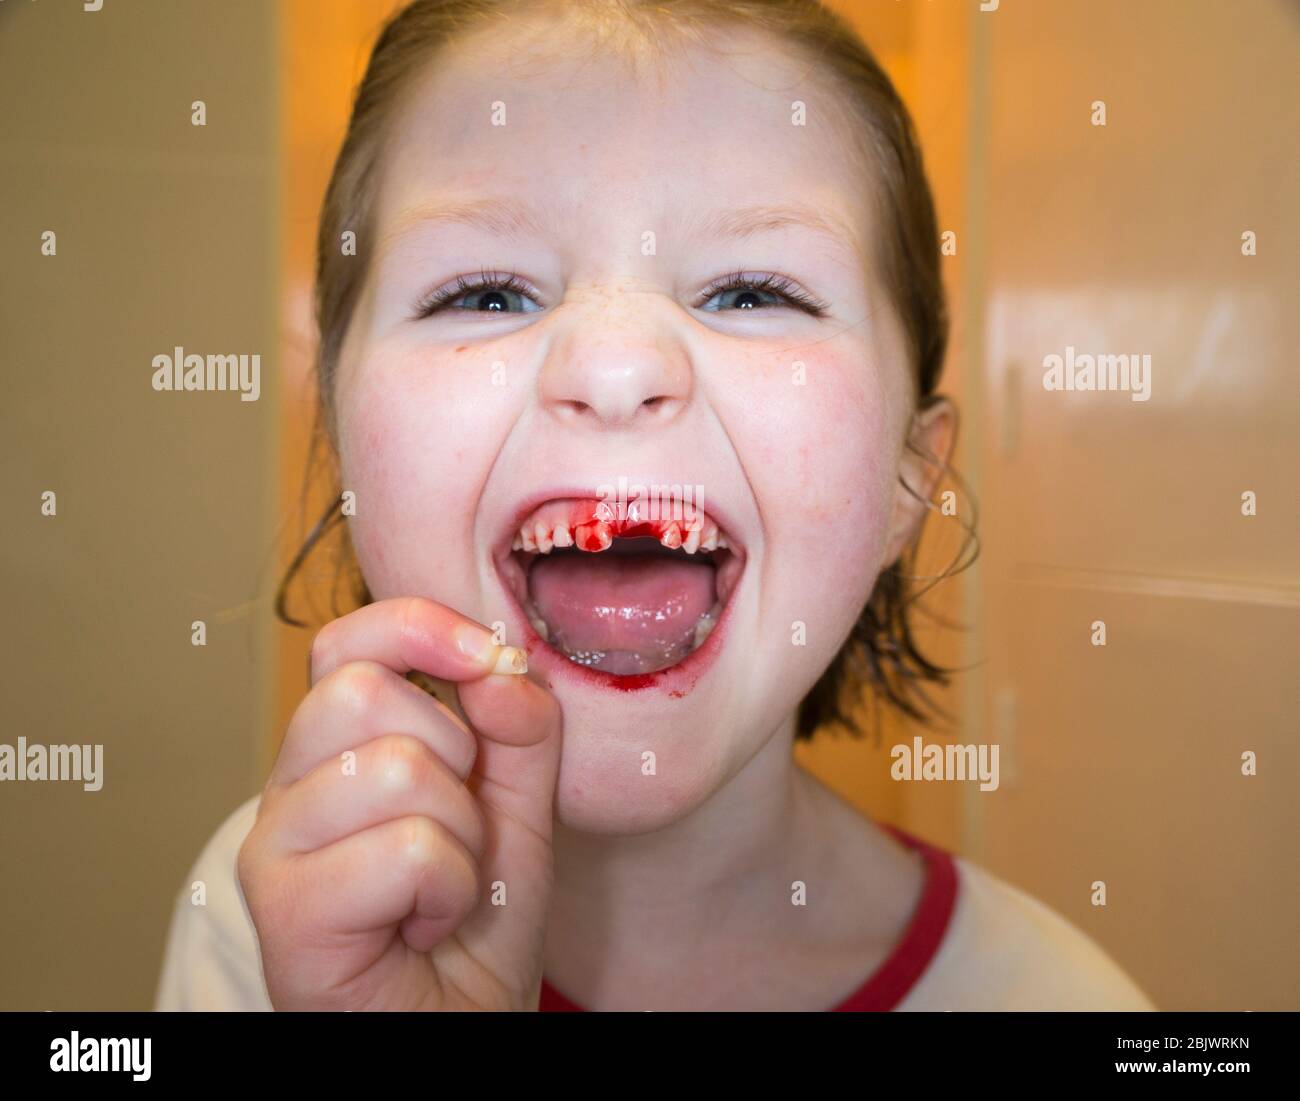 Une petite fille de cinq ans qui est heureuse et ravie, ayant tiré une de  ses dents de lait, une incisive de dessus lâche. La plaie est en train de  saigner avec